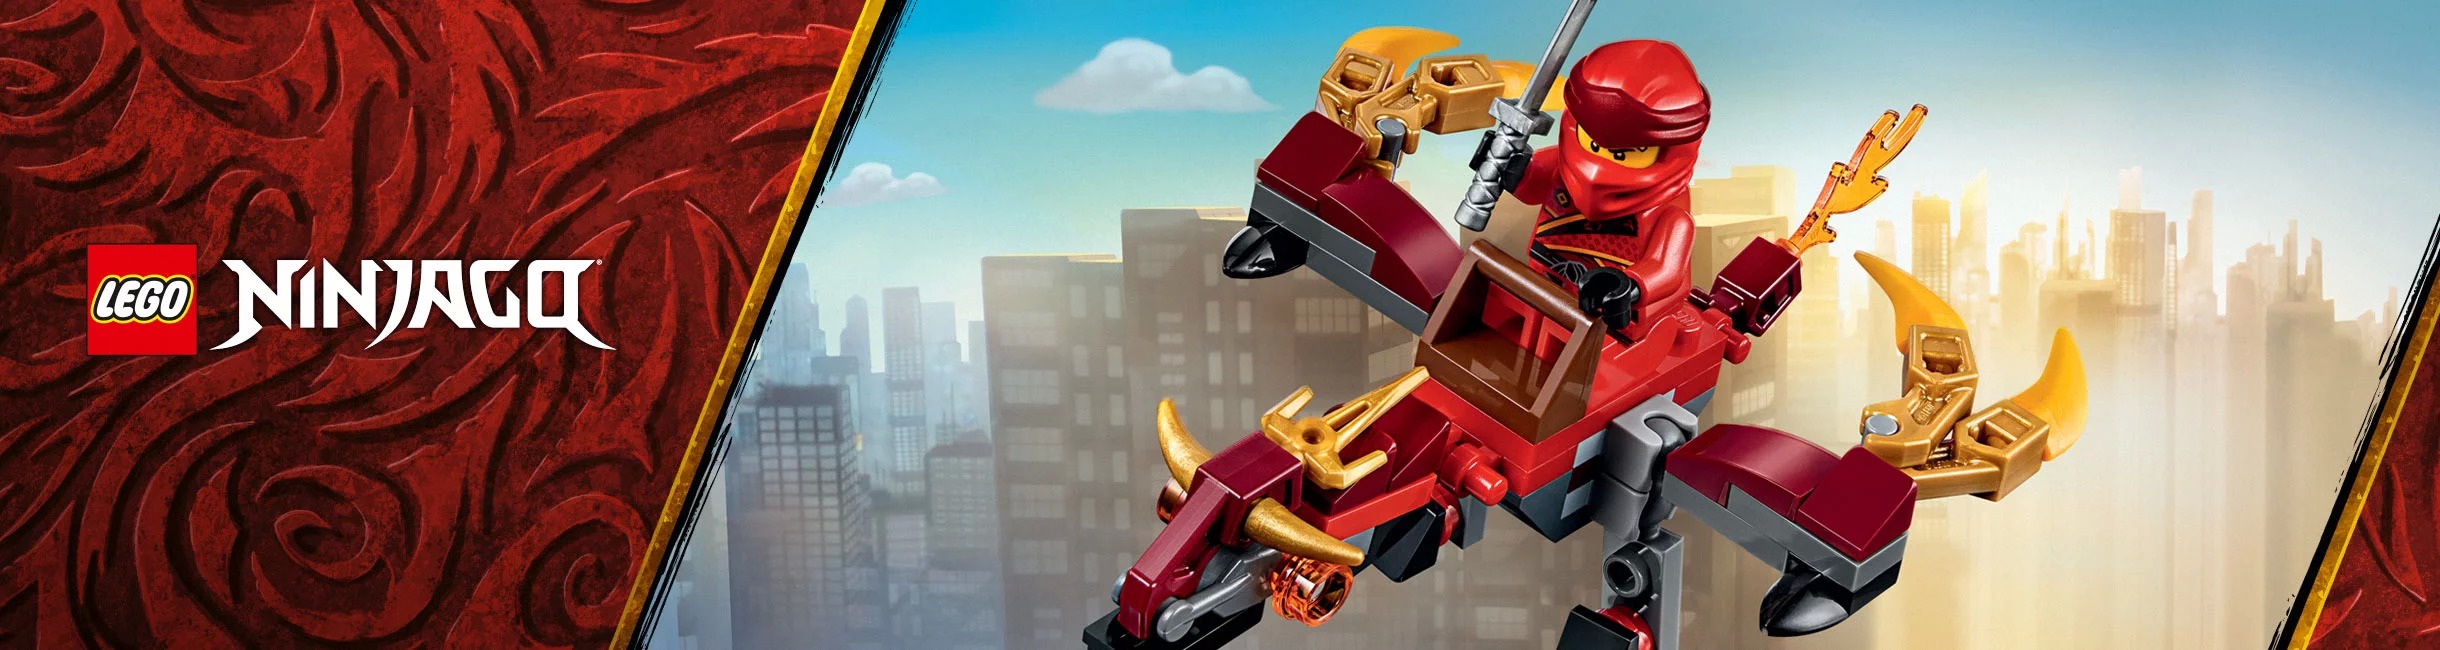 Рекламная акция Лего (LEGO) «Огненный дракон в подарок!»